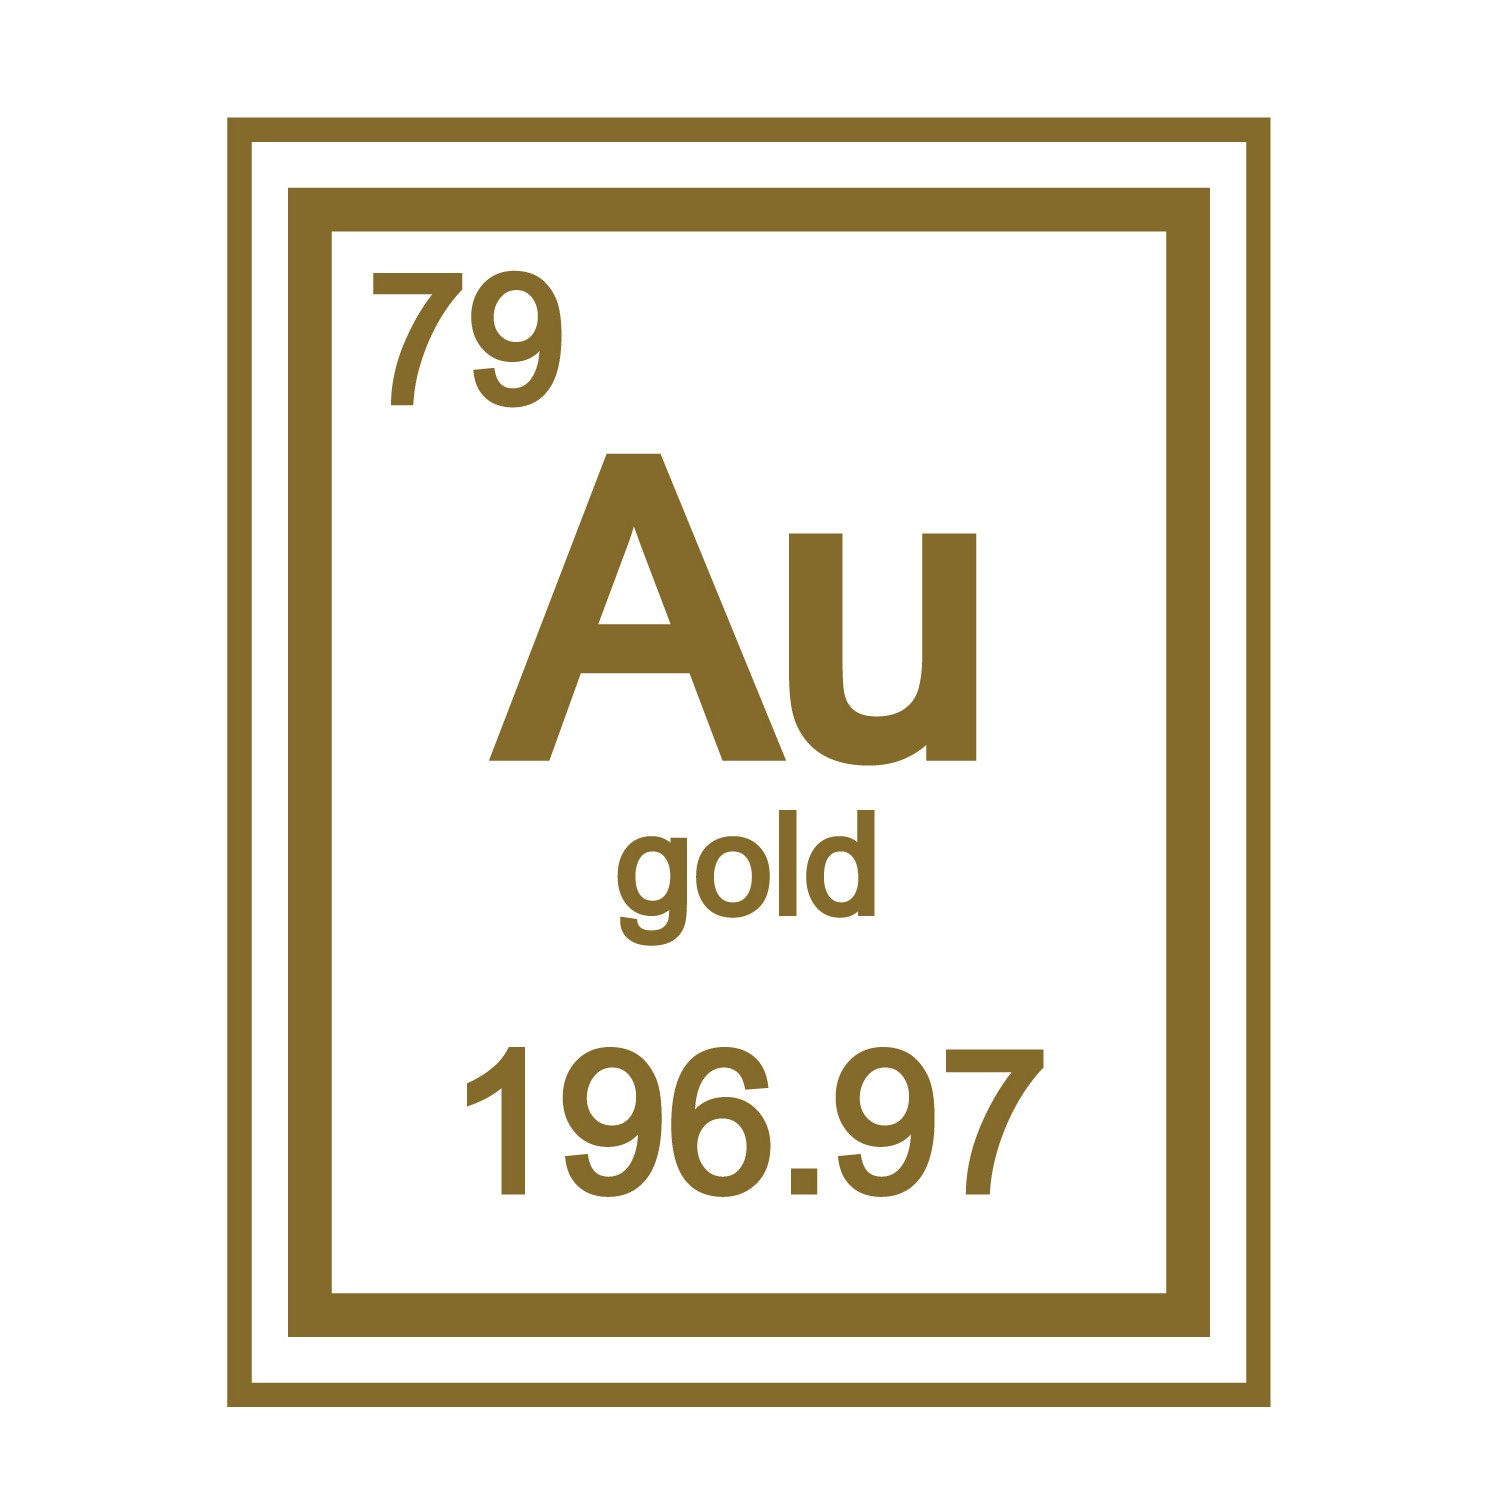 Золото название элемента. Золото элемент таблицы Менделеева. Золото химический элемент в таблице. Аурум золото химический элемент. Химический знак золота.